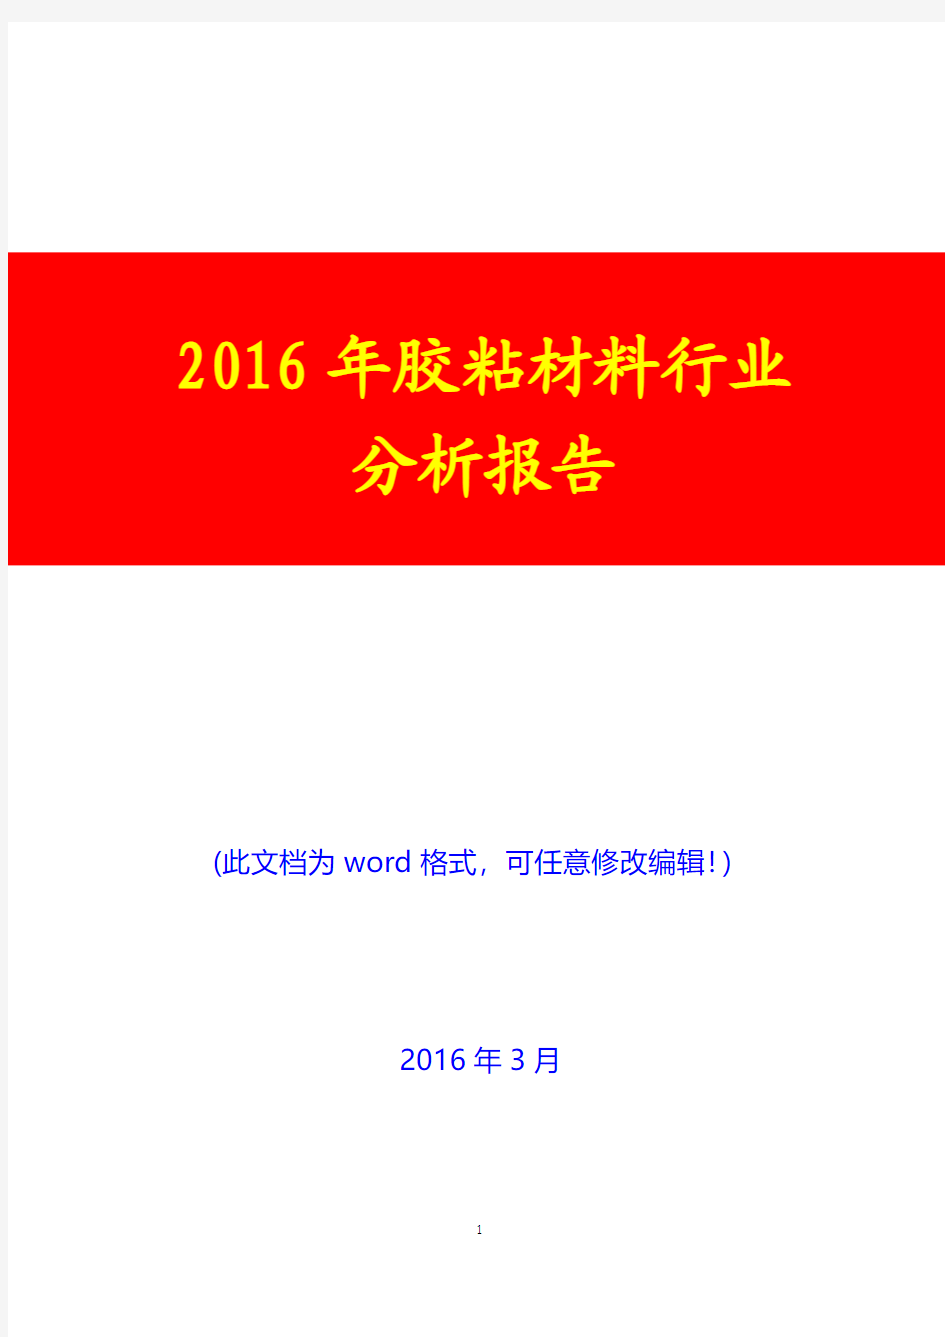 2016年胶粘材料行业分析报告(完美版)